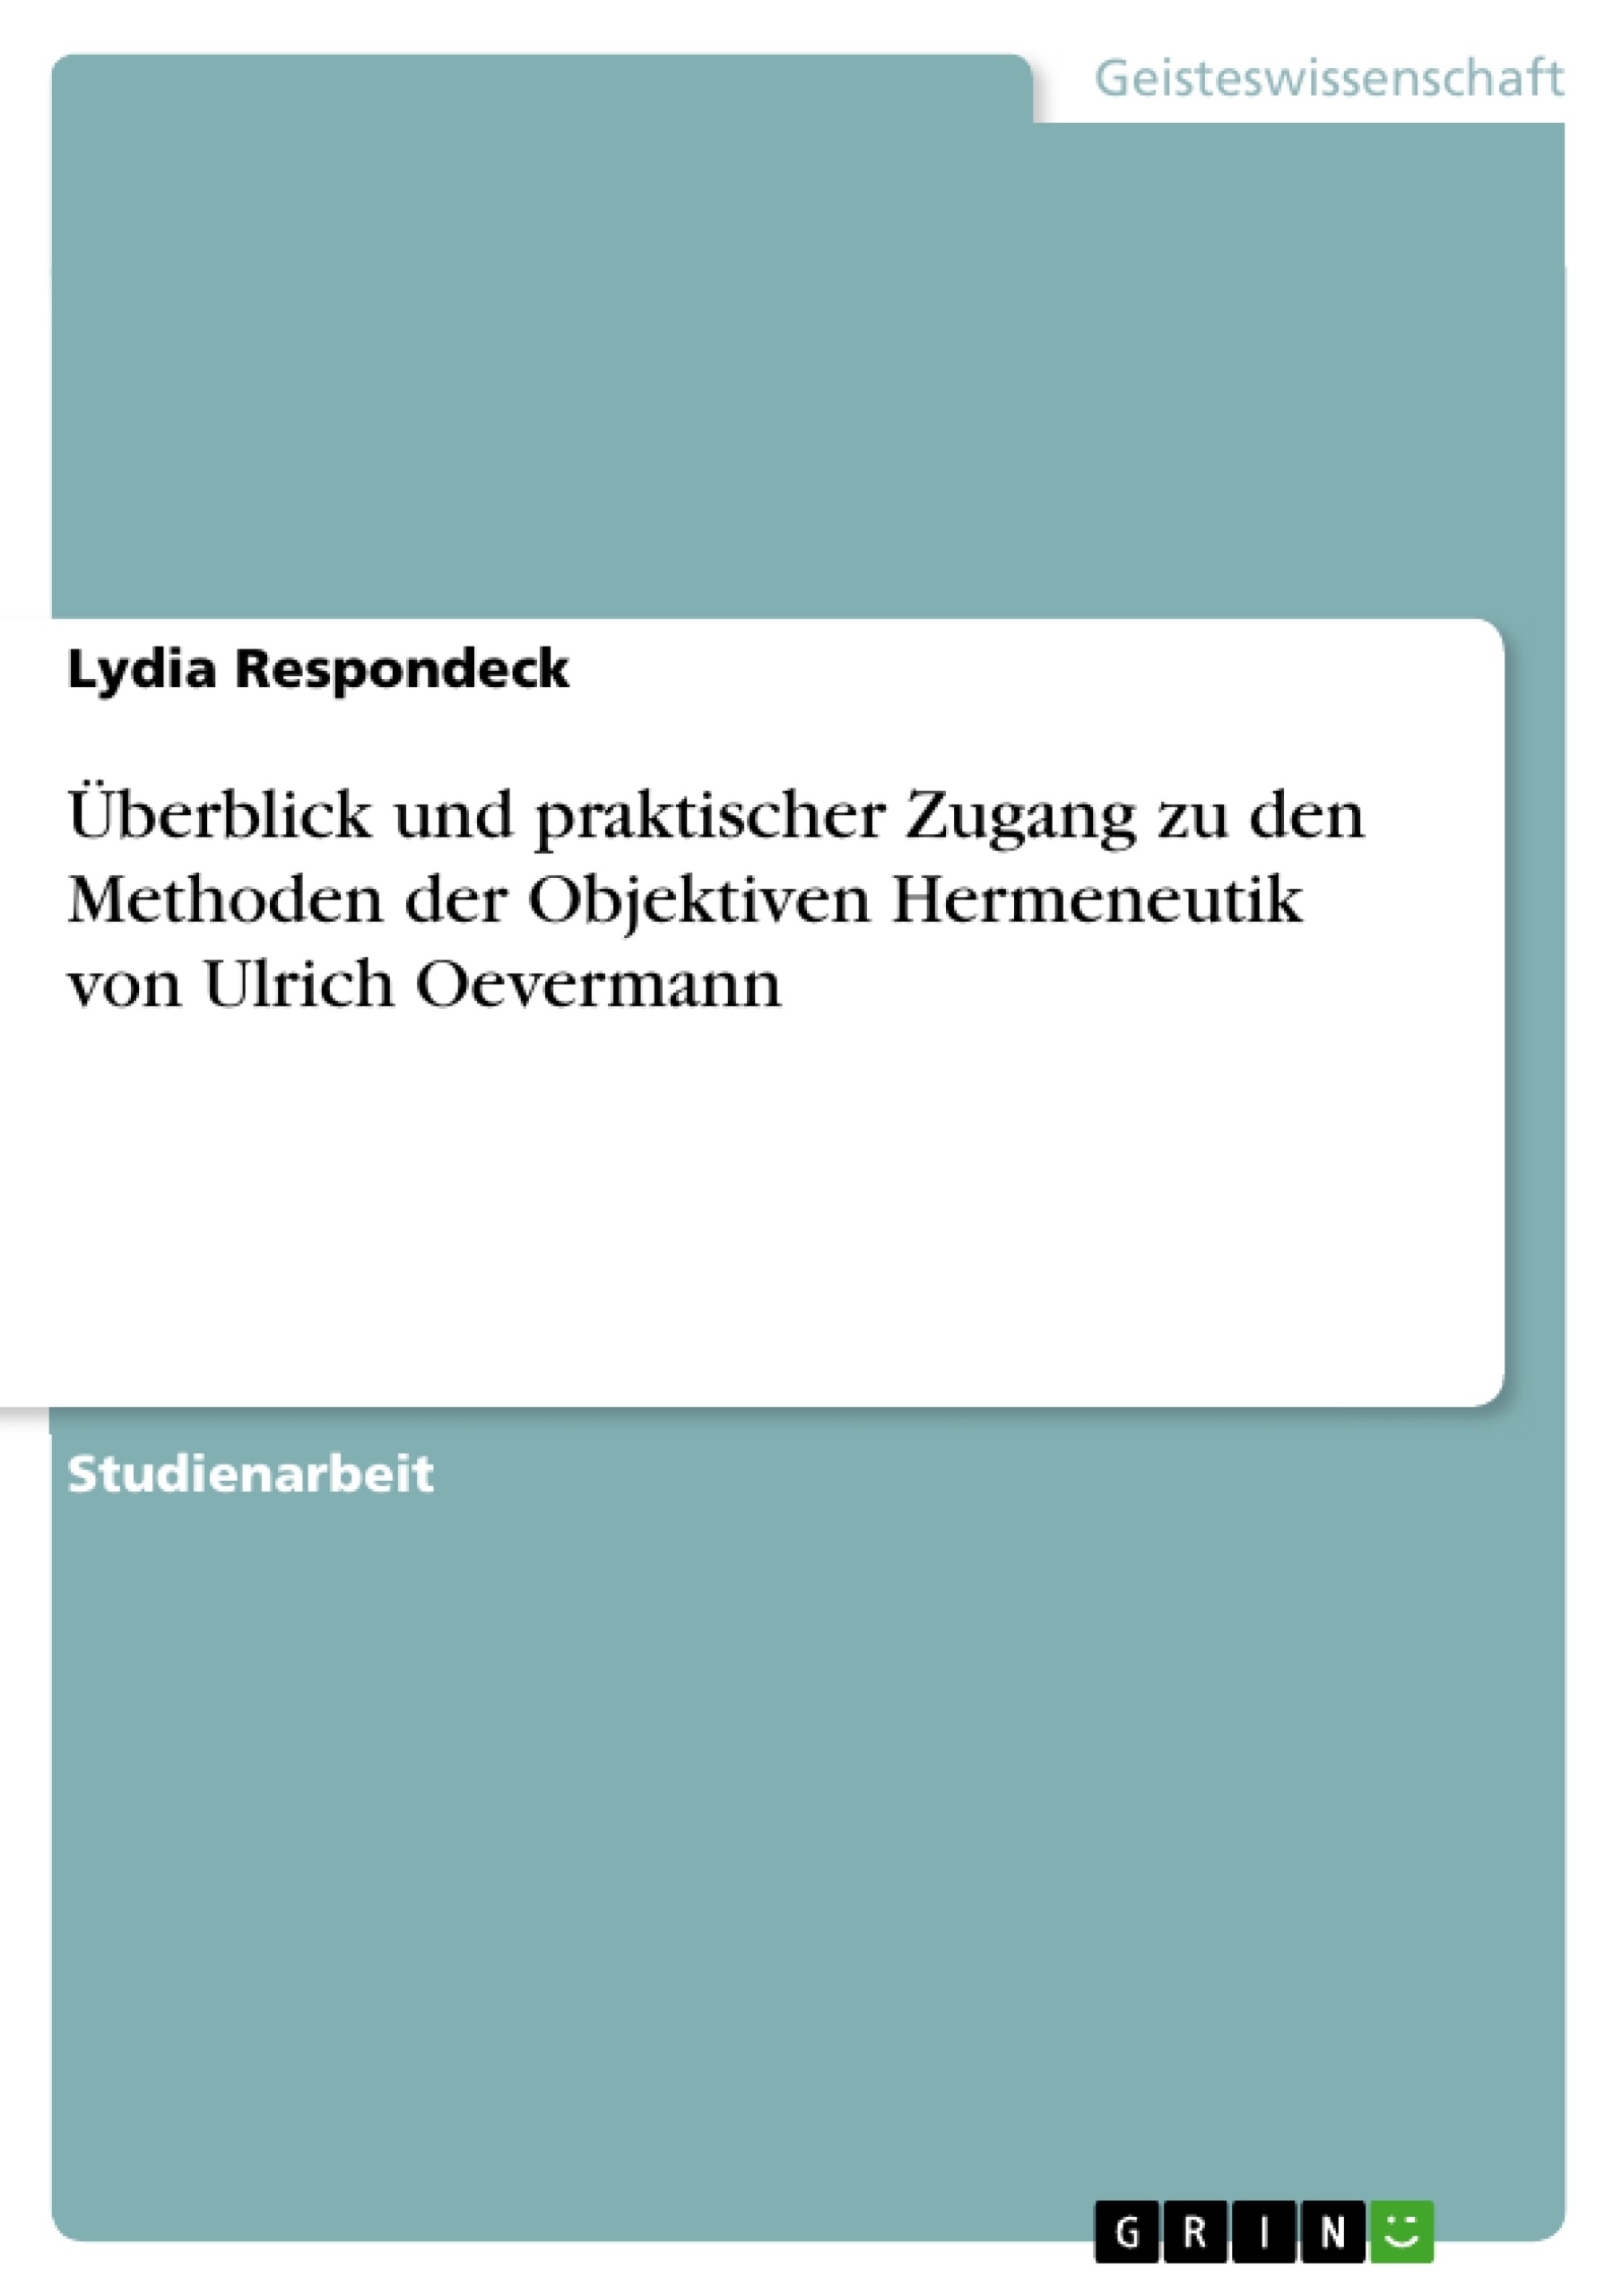 Titre: Überblick und praktischer Zugang zu den Methoden der Objektiven Hermeneutik von Ulrich Oevermann